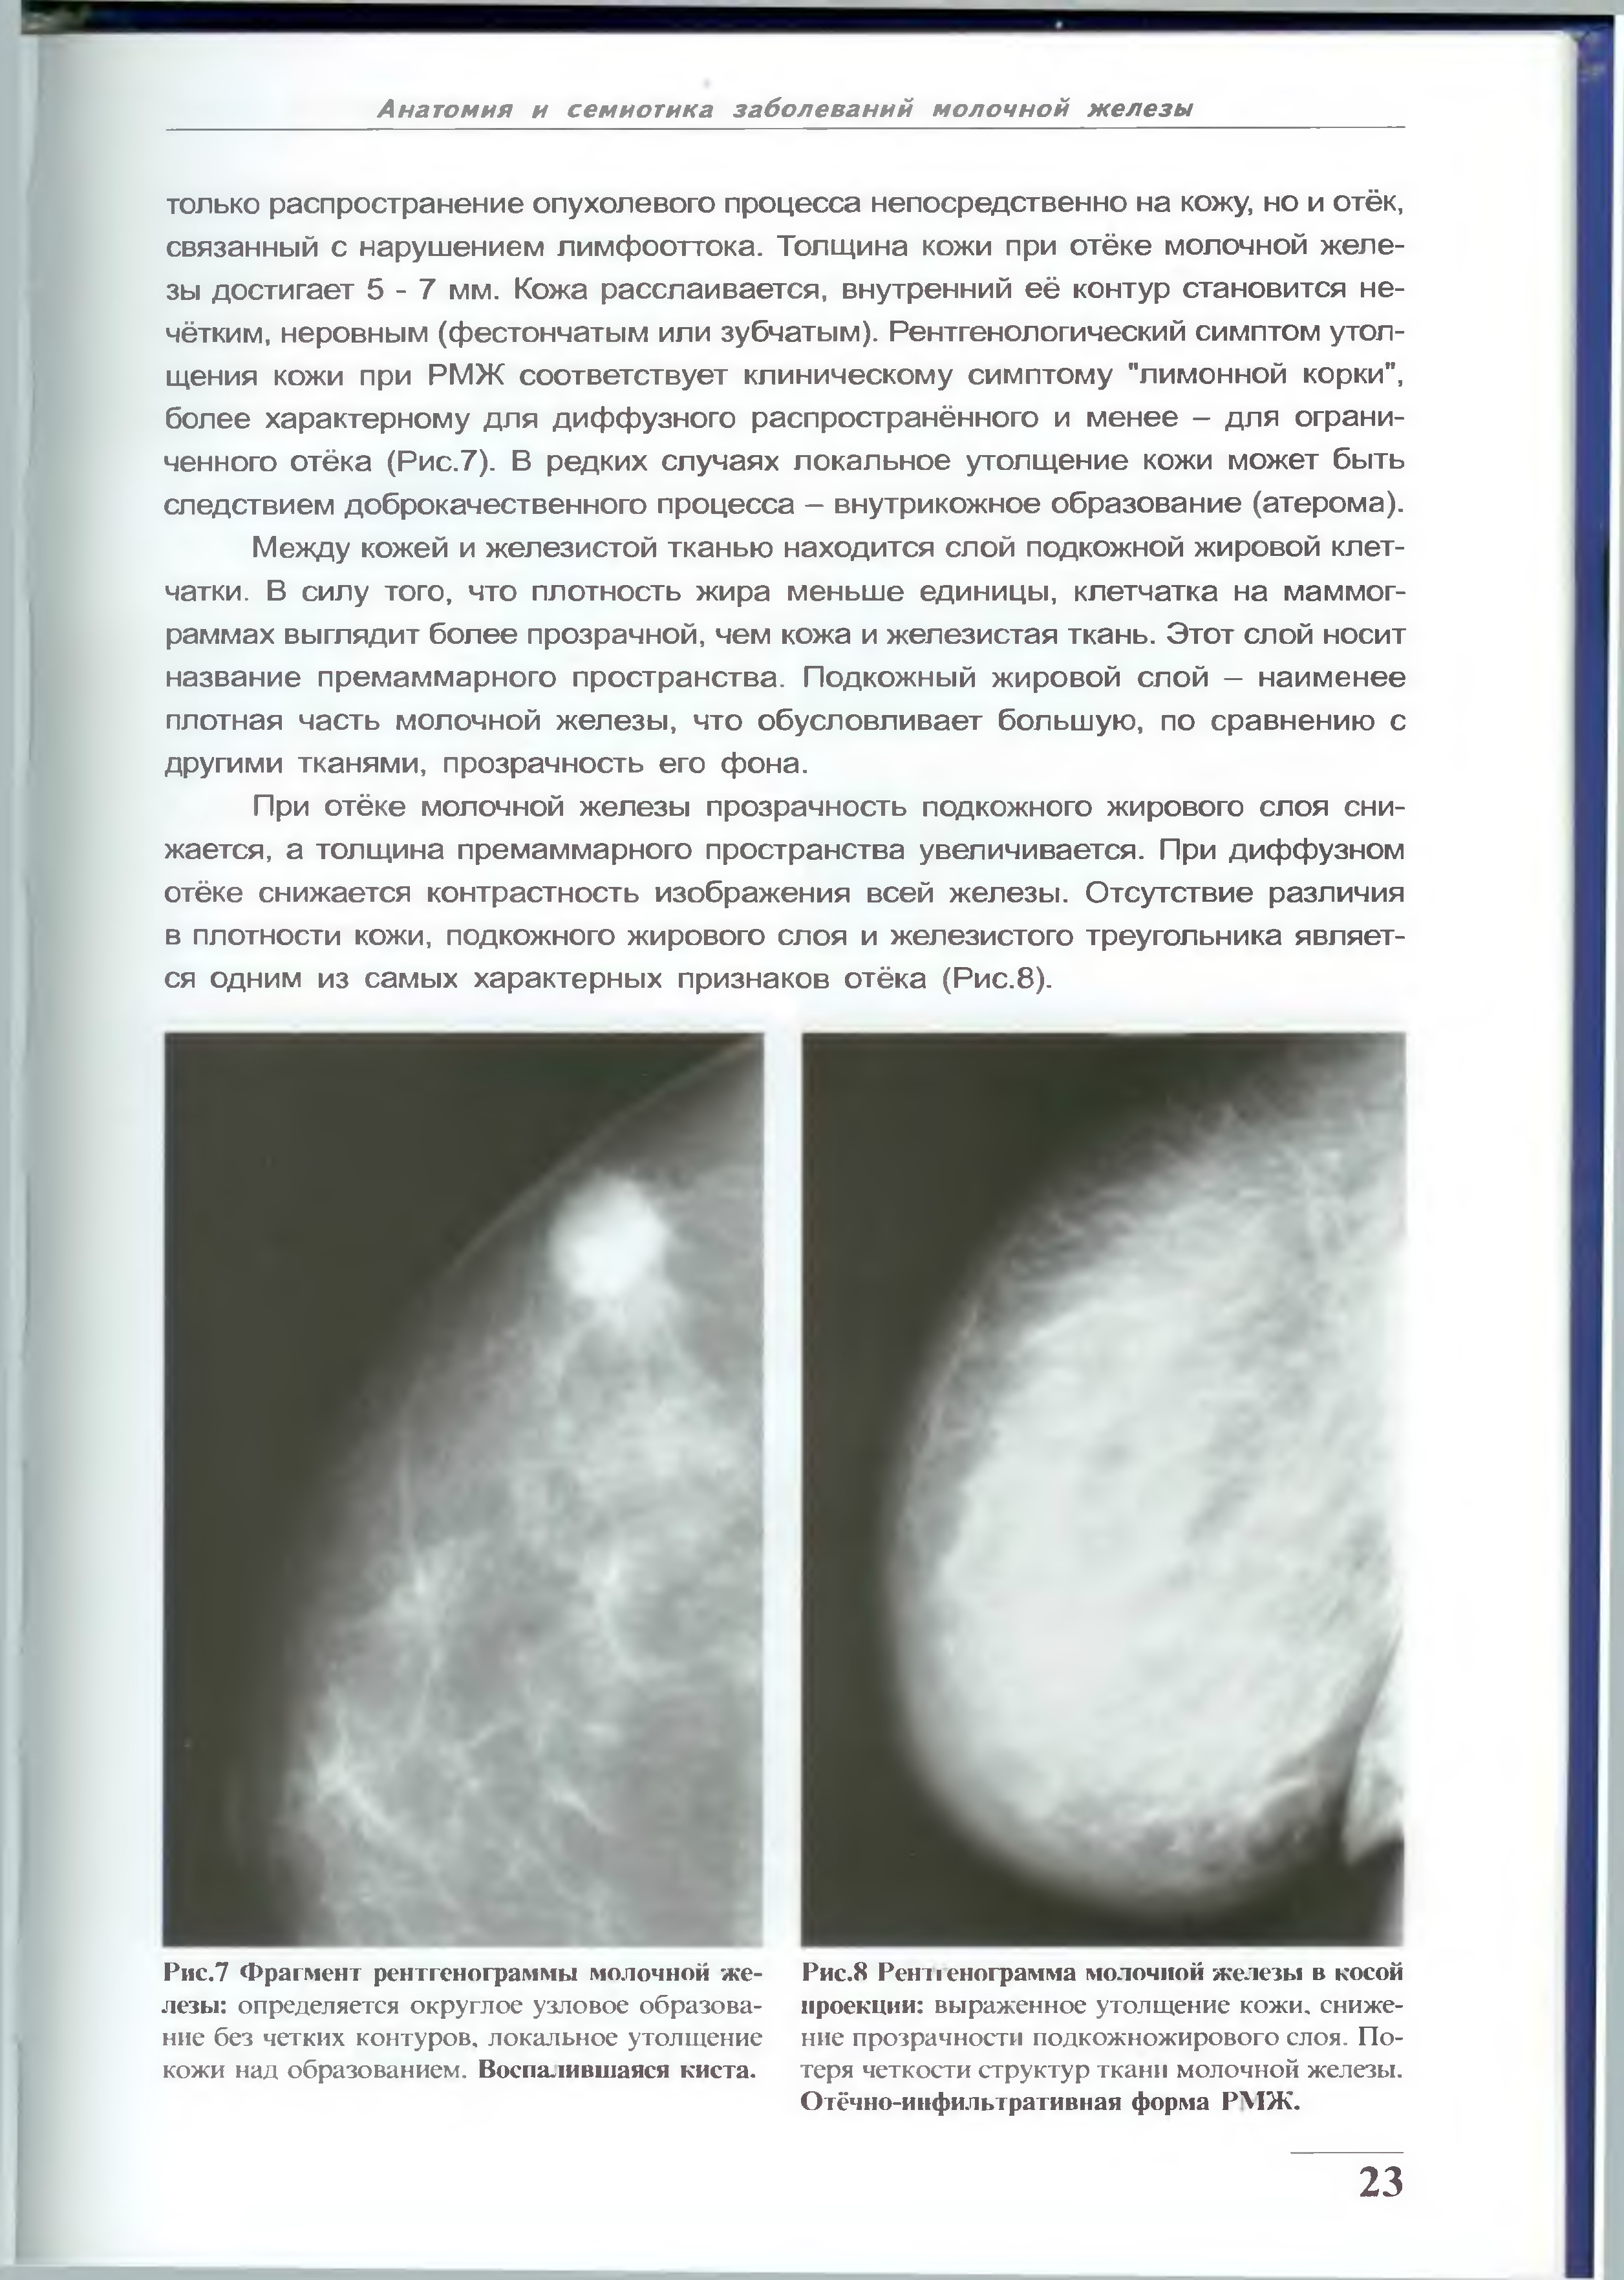 Анатомия молочной железы маммограмма